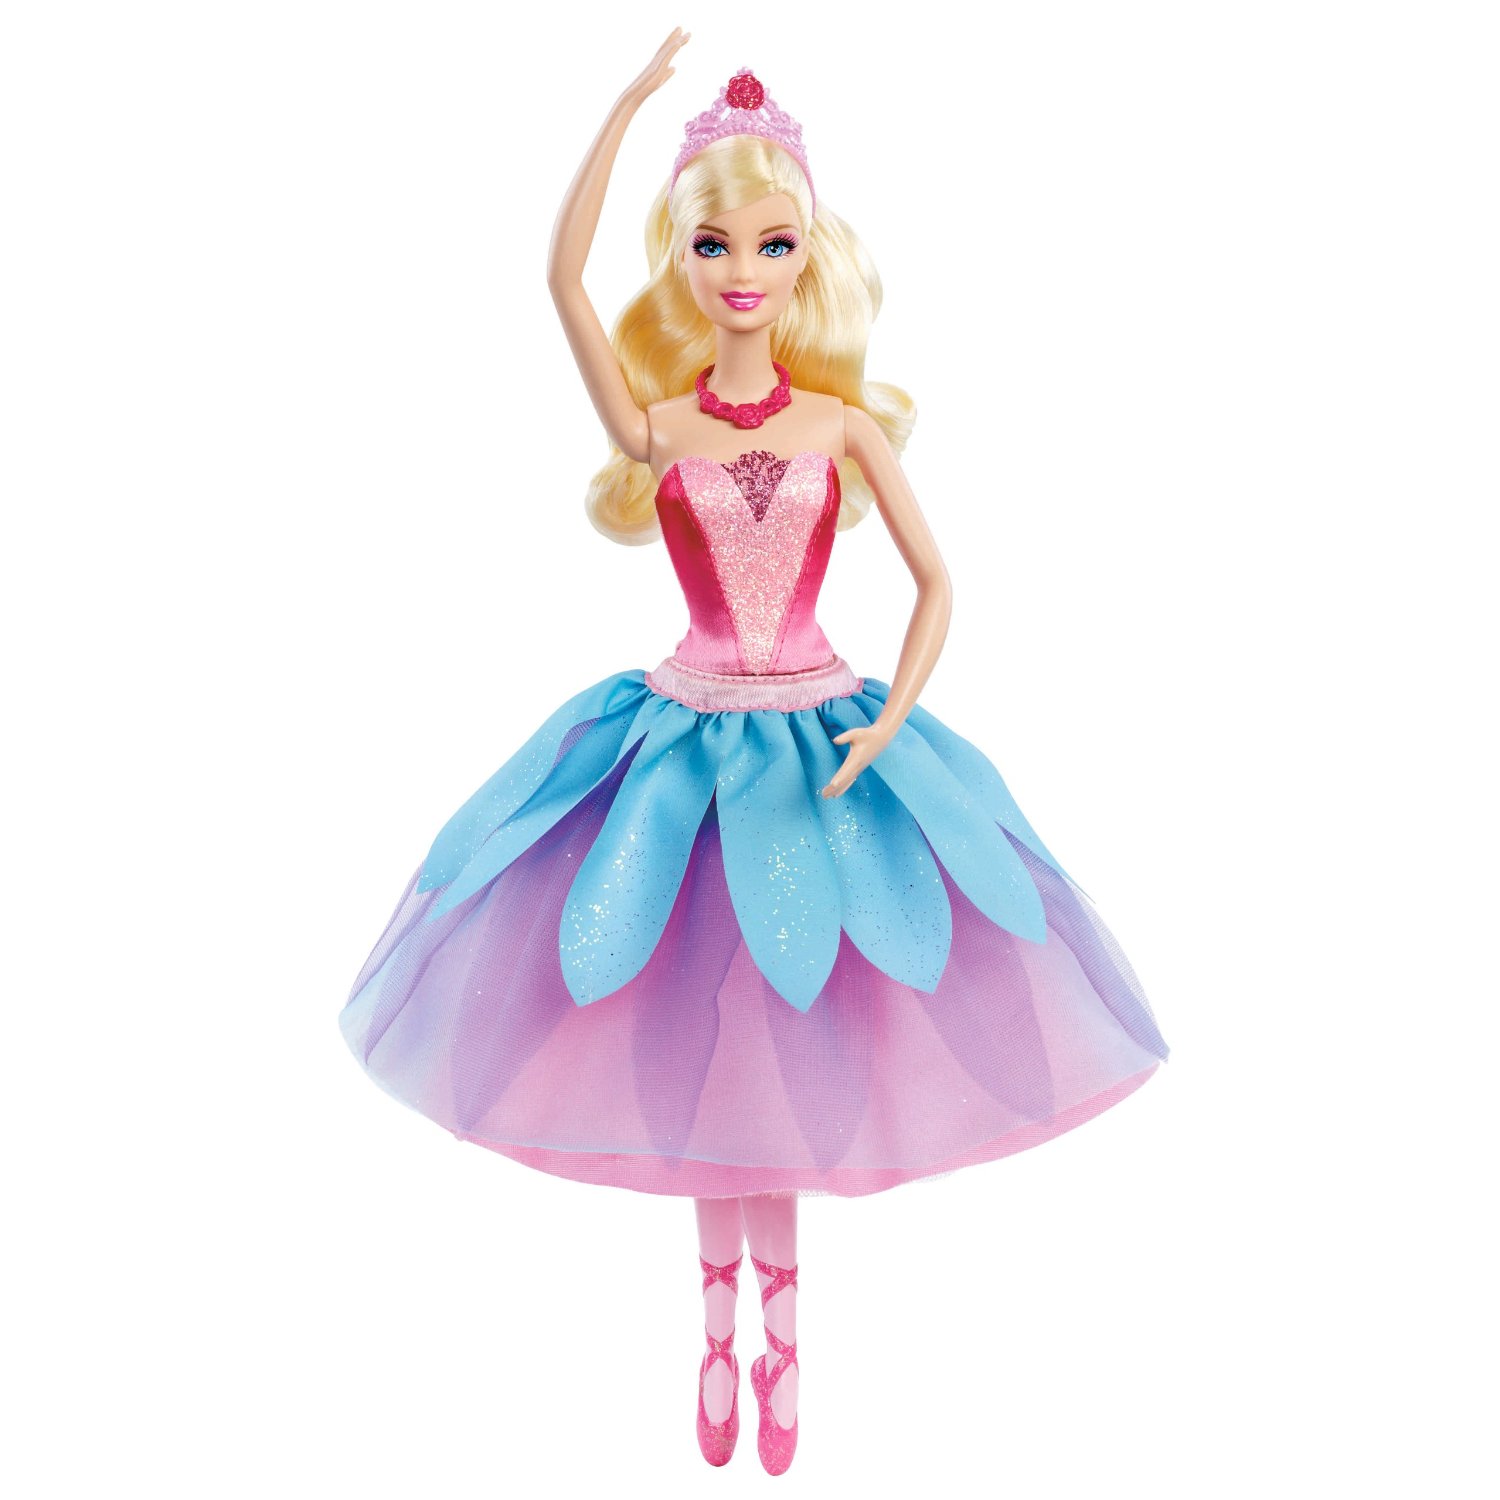 Kristyn Doll   Barbie In The Pink Shoes Photo  32780614    Fanpop